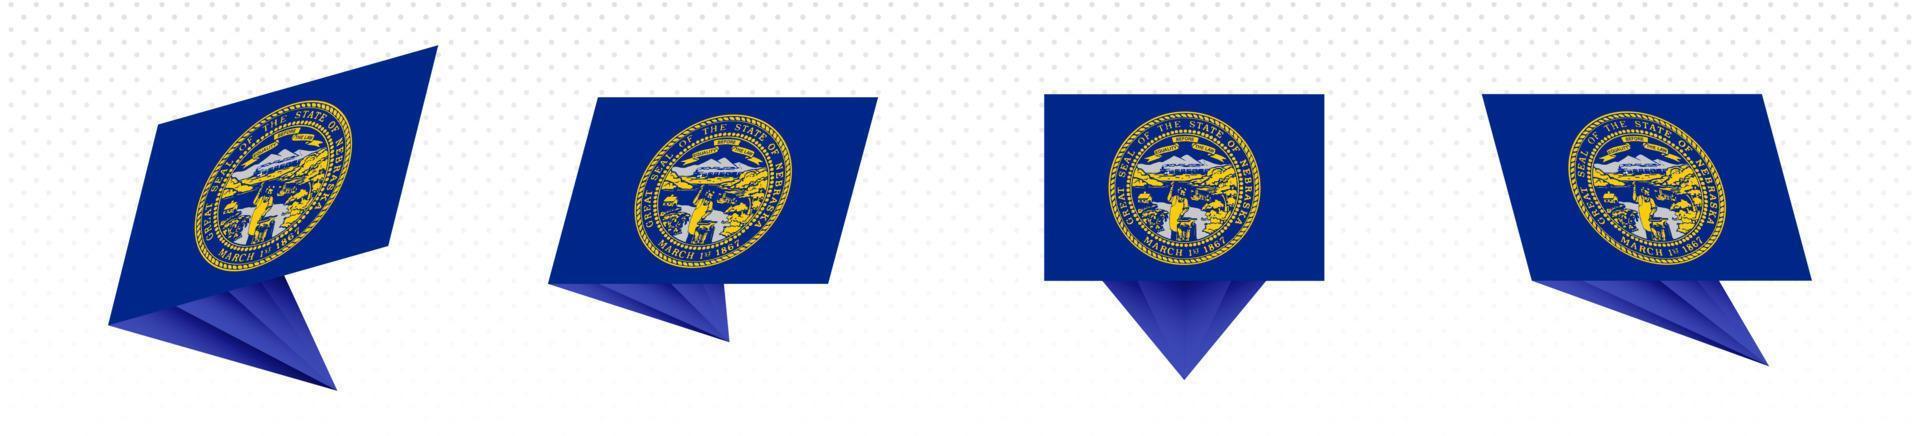 Flagge des US-Bundesstaates Nebraska in modernem abstraktem Design, Flaggensatz. vektor